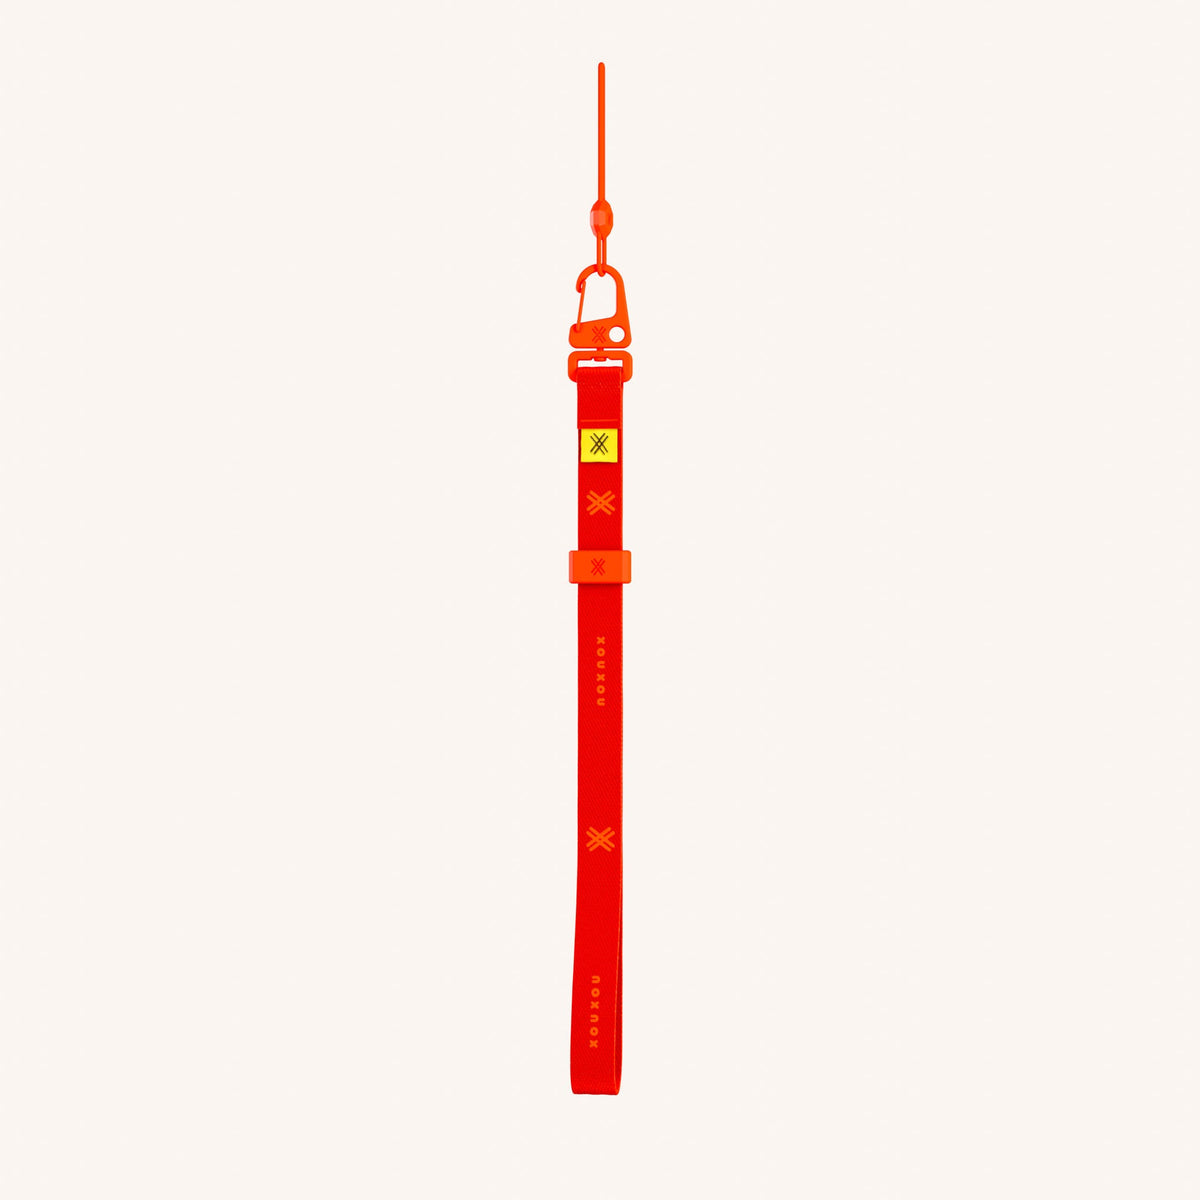 Phone Strap Wrist Strap in Neon Orange Total View | XOUXOU